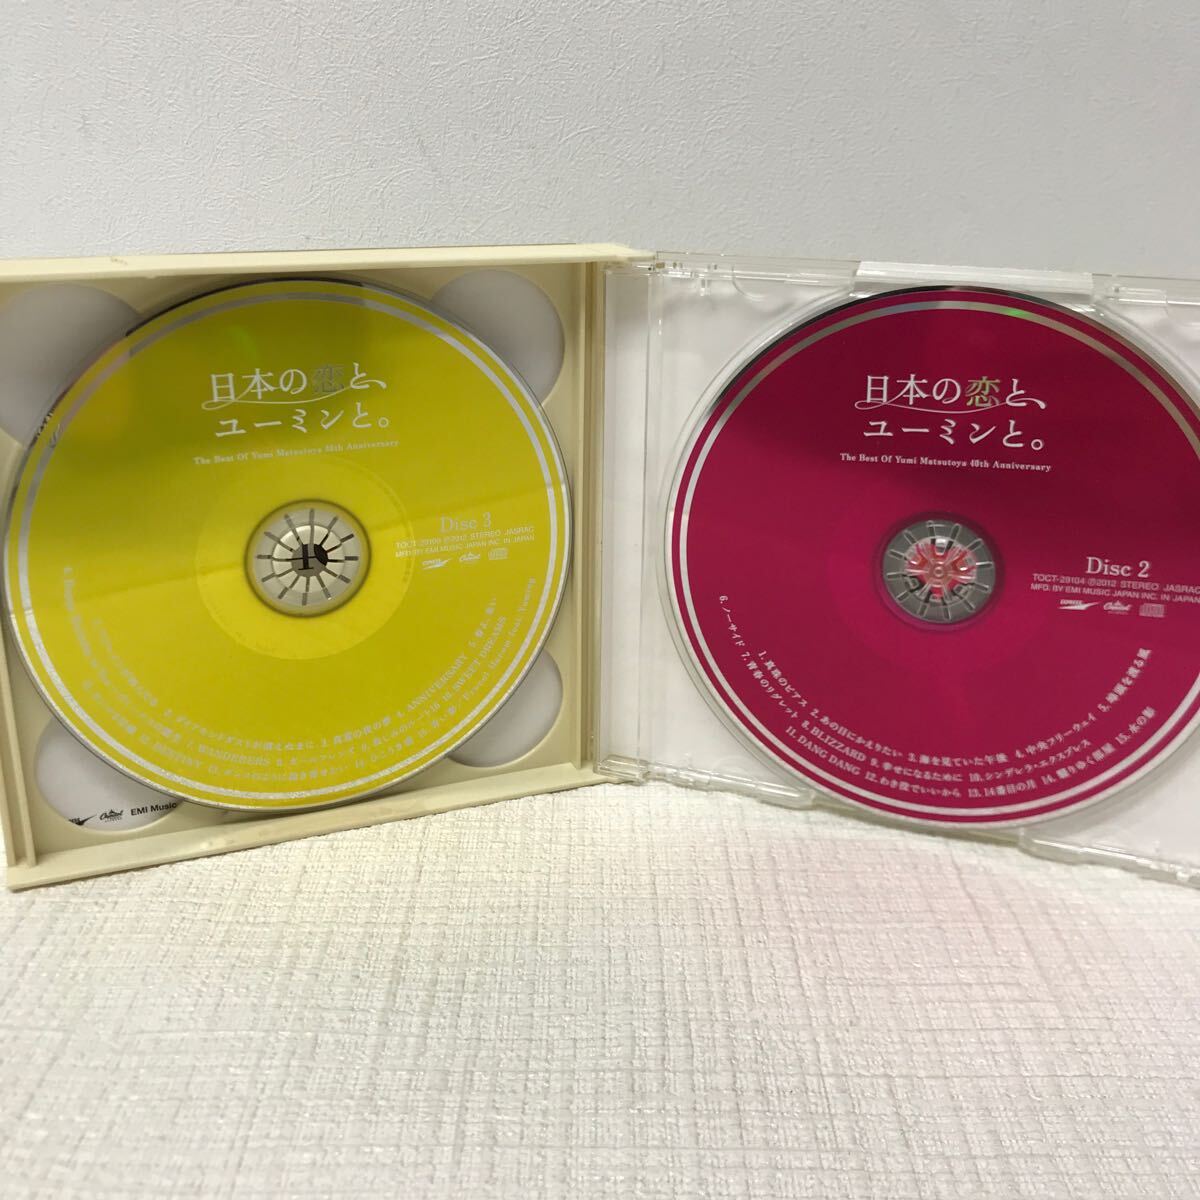 I0411A3 日本の恋と、ユーミンと。 松任谷由実 40周年記念 ベストアルバム CD 3枚組 音楽 邦楽 やさしさに包まれたなら 卒業写真 他の画像5